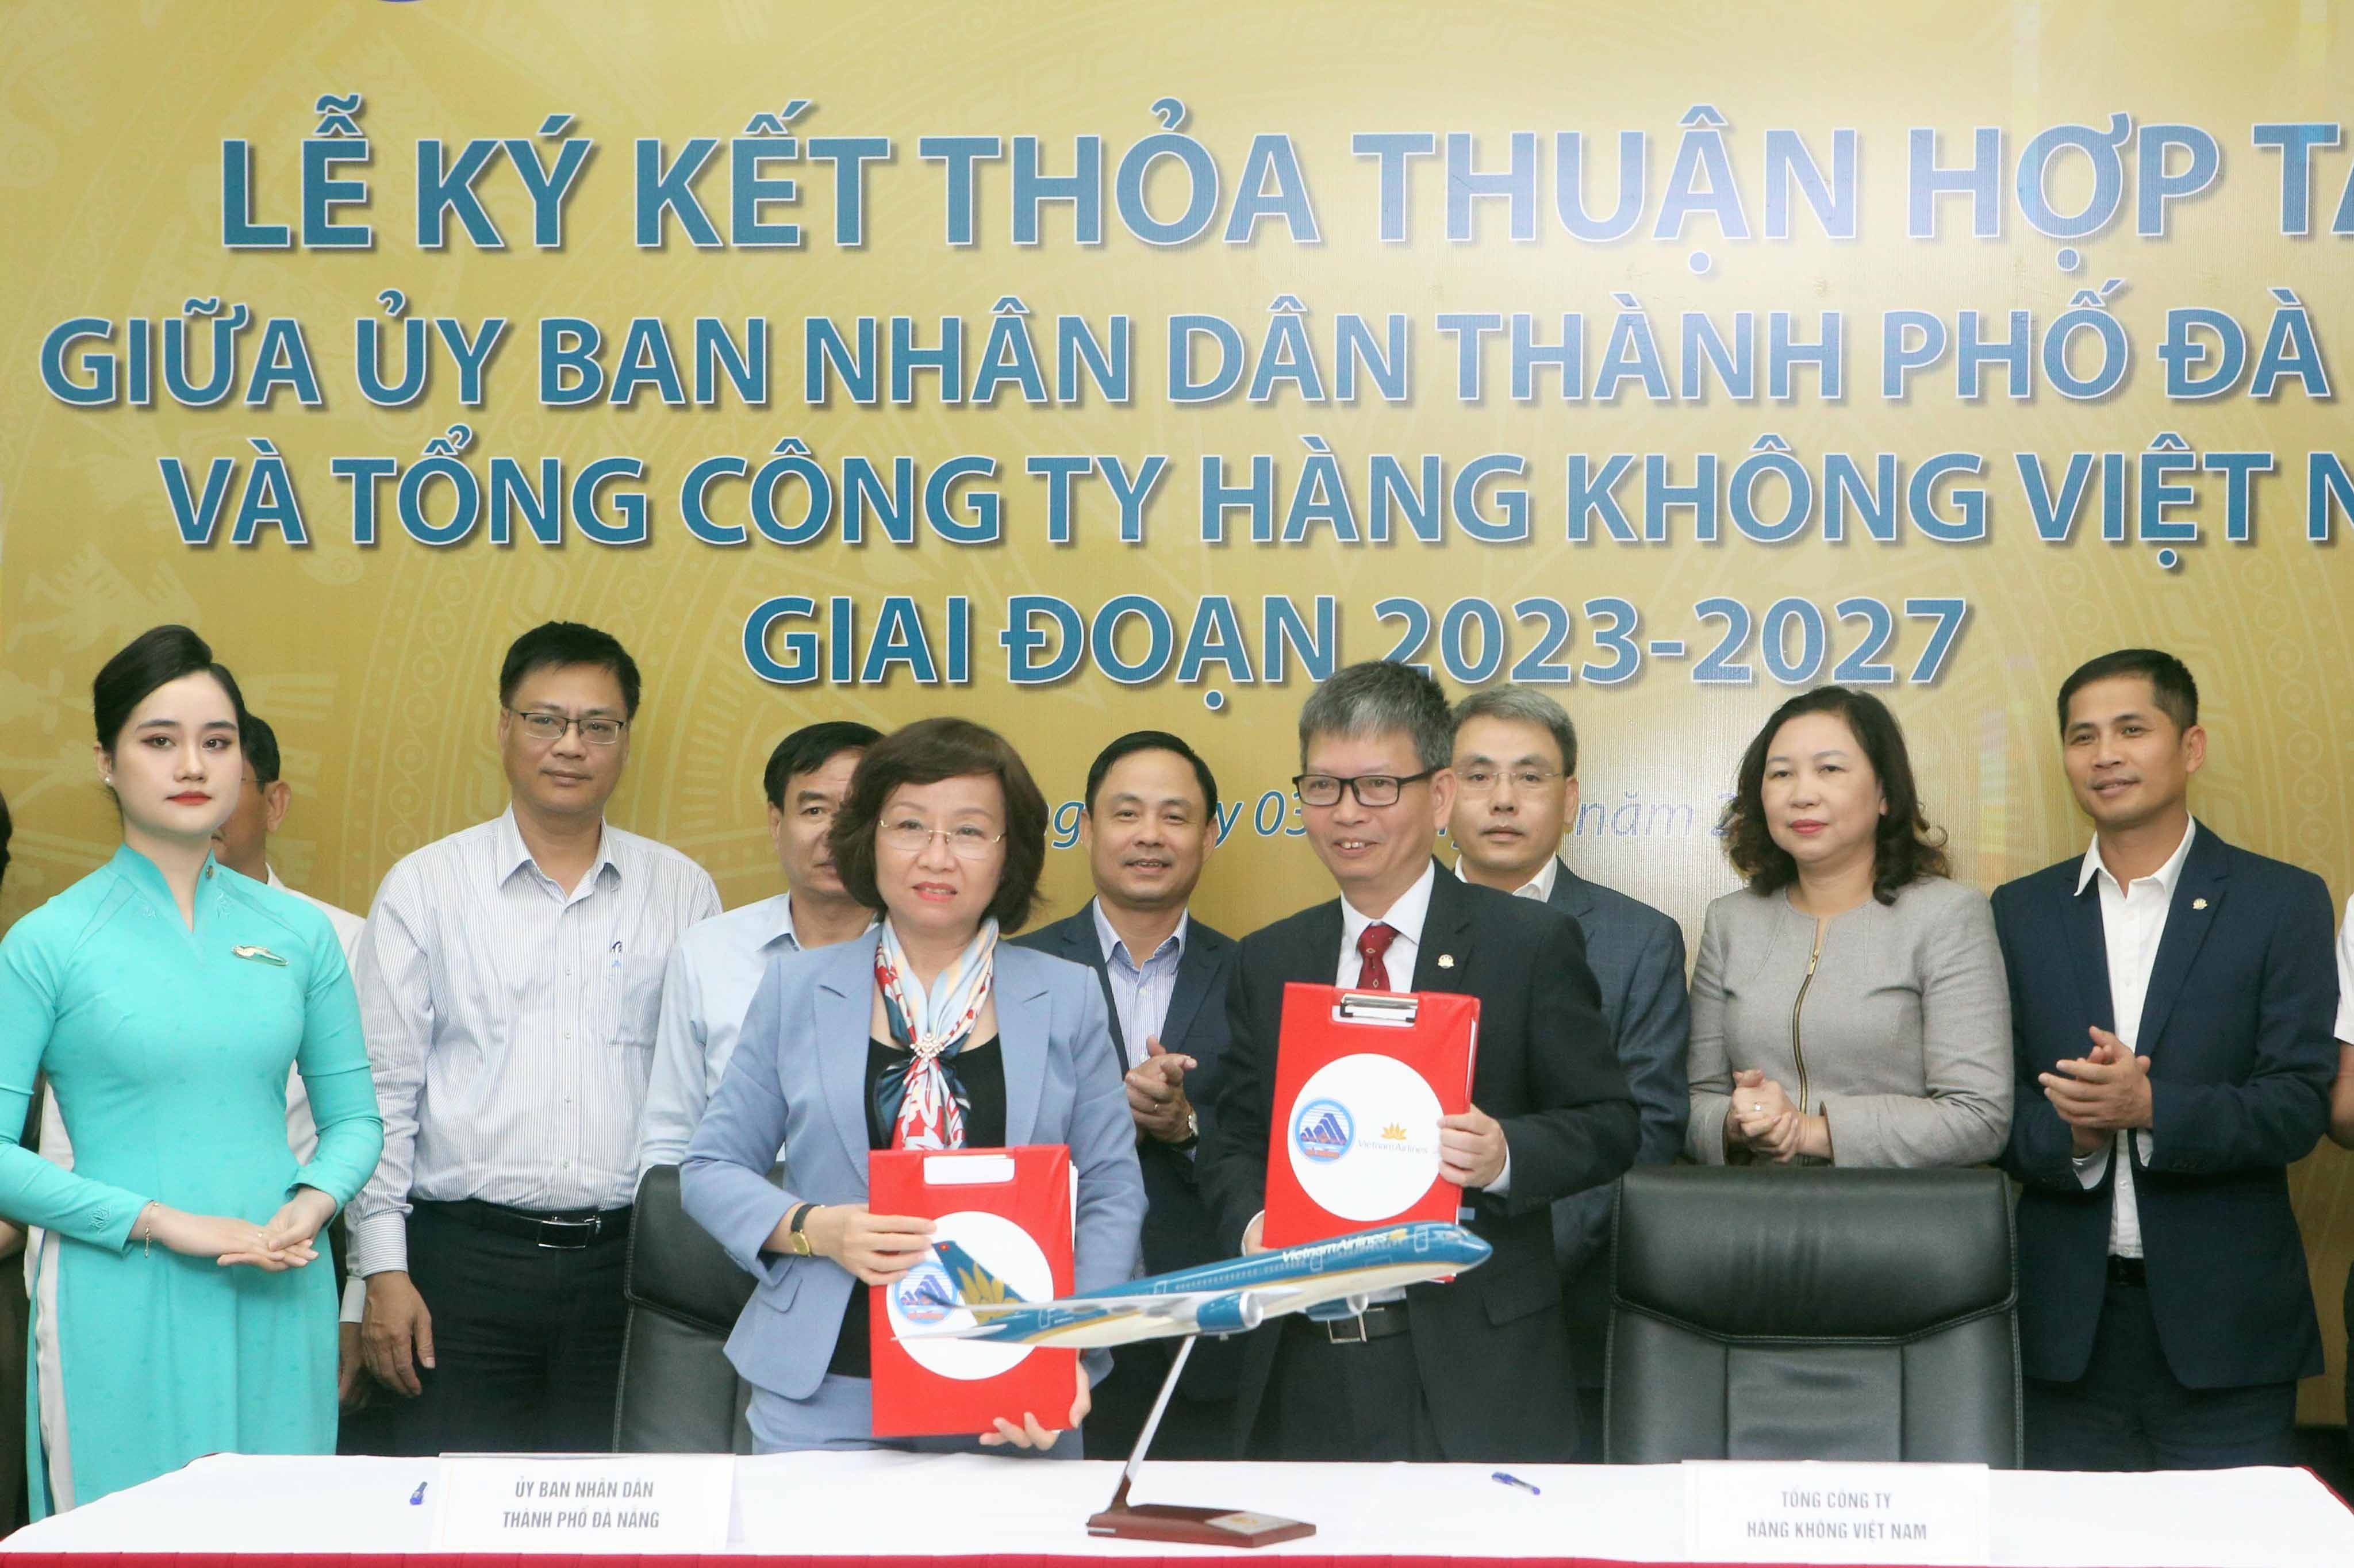 Ký kết thoả thuận hợp tác giữa UBND TP Đà Nẵng và Vietnam Airlines giai đoạn 2023 - 2027